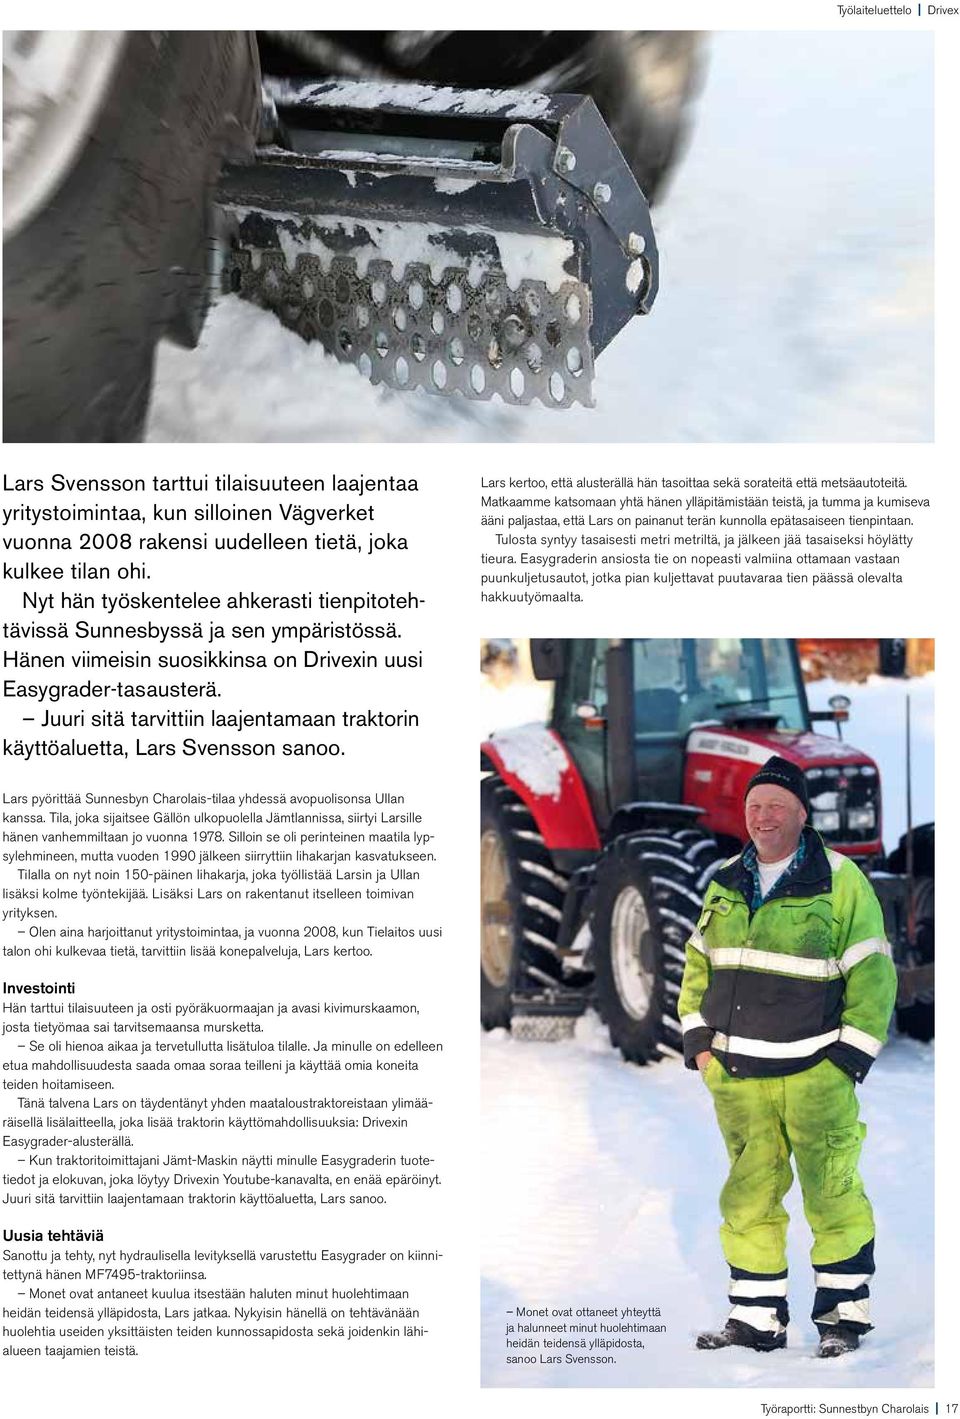 Juuri sitä tarvittiin laajentamaan traktorin käyttöaluetta, Lars Svensson sanoo. Lars kertoo, että alusterällä hän tasoittaa sekä sorateitä että metsäautoteitä.